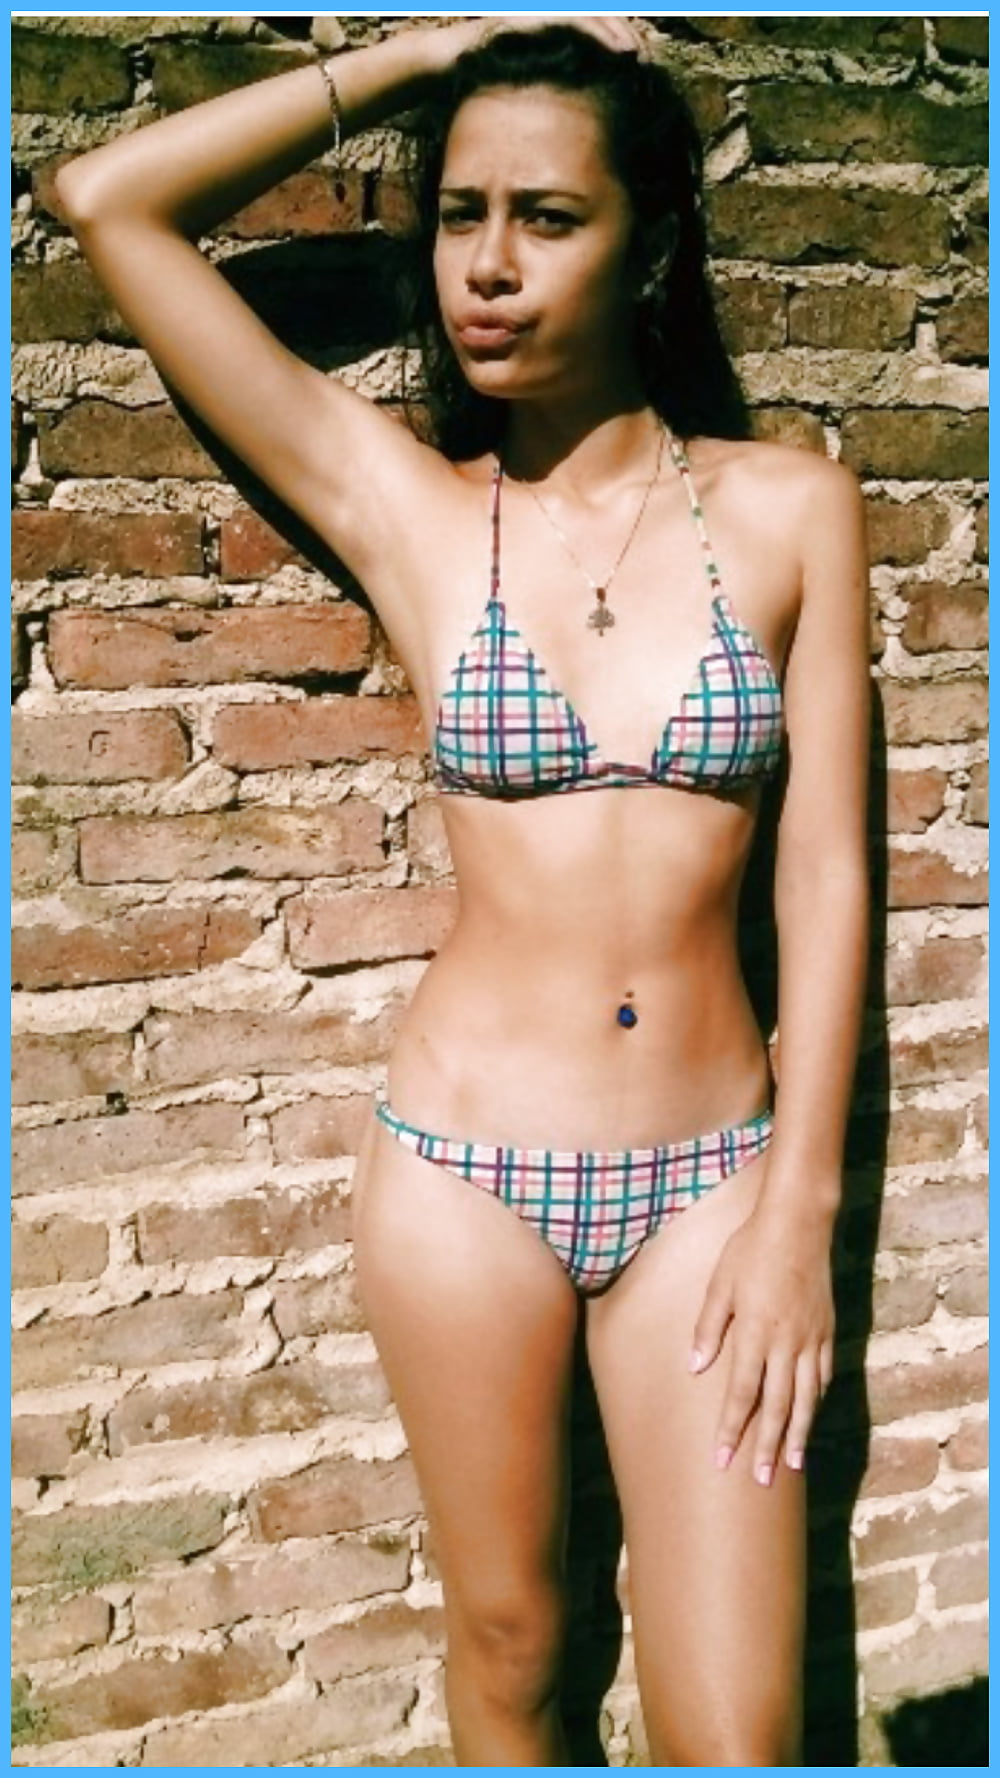 Young girl bikini photos